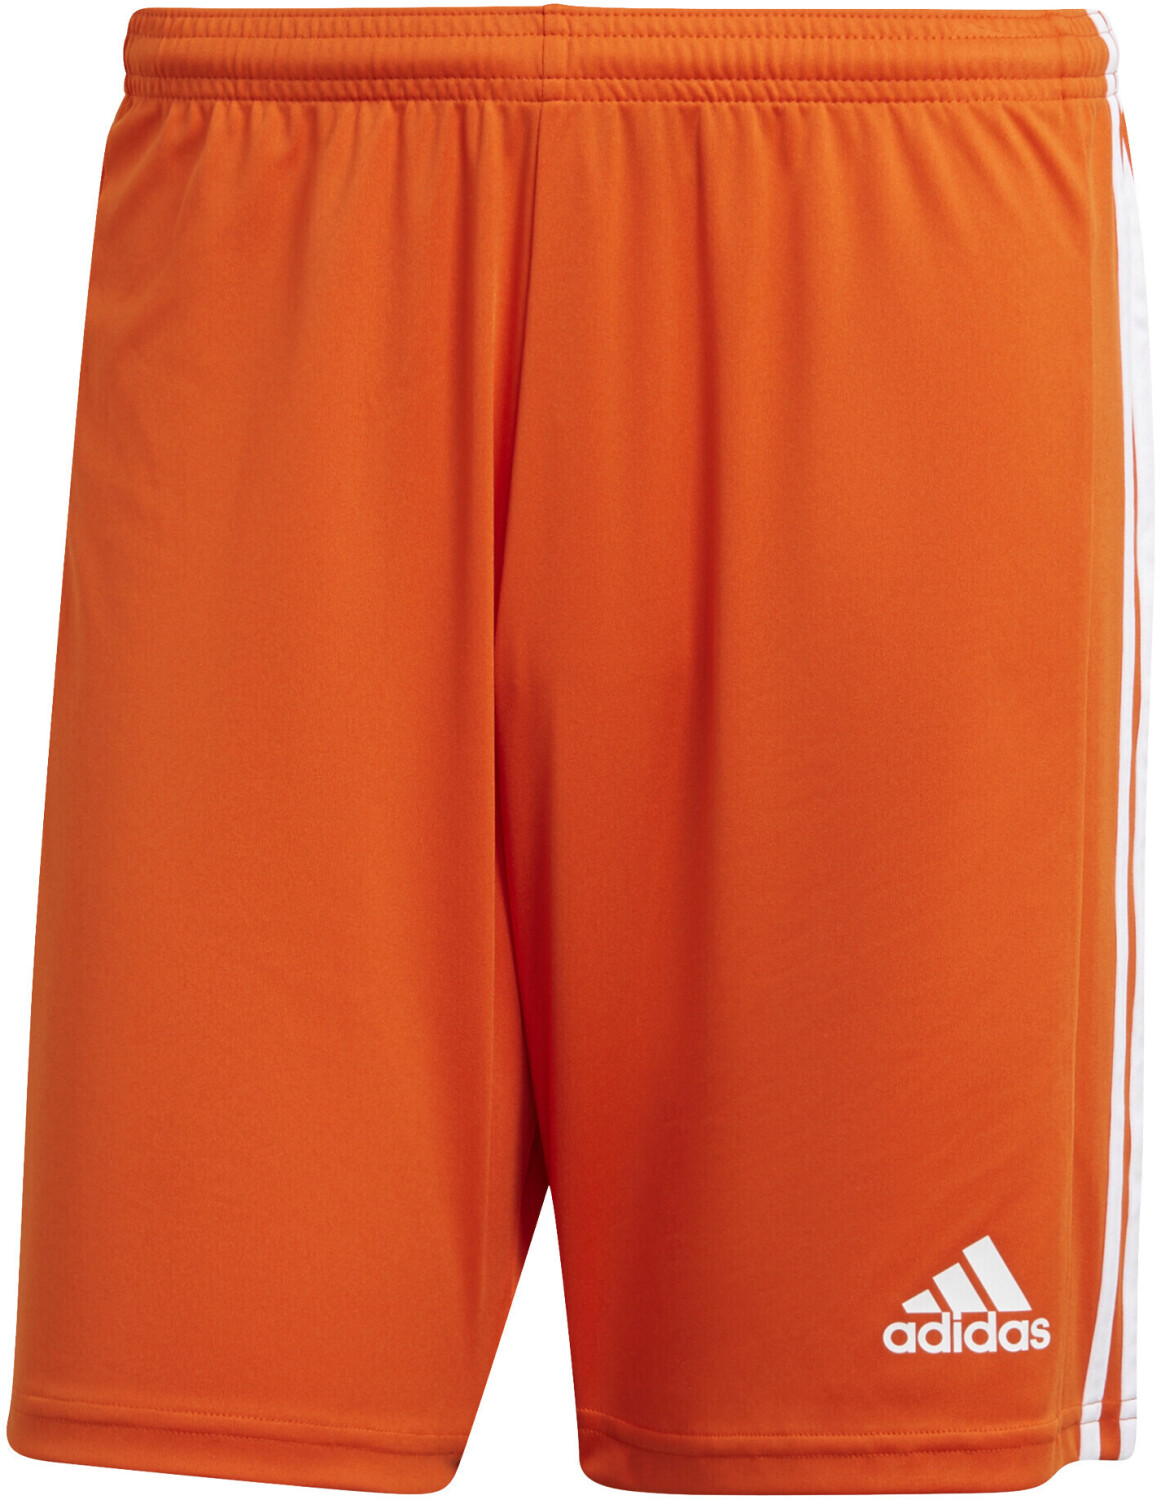 Photos - Football Kit Adidas Squadra 21 Shorts team orange/white 